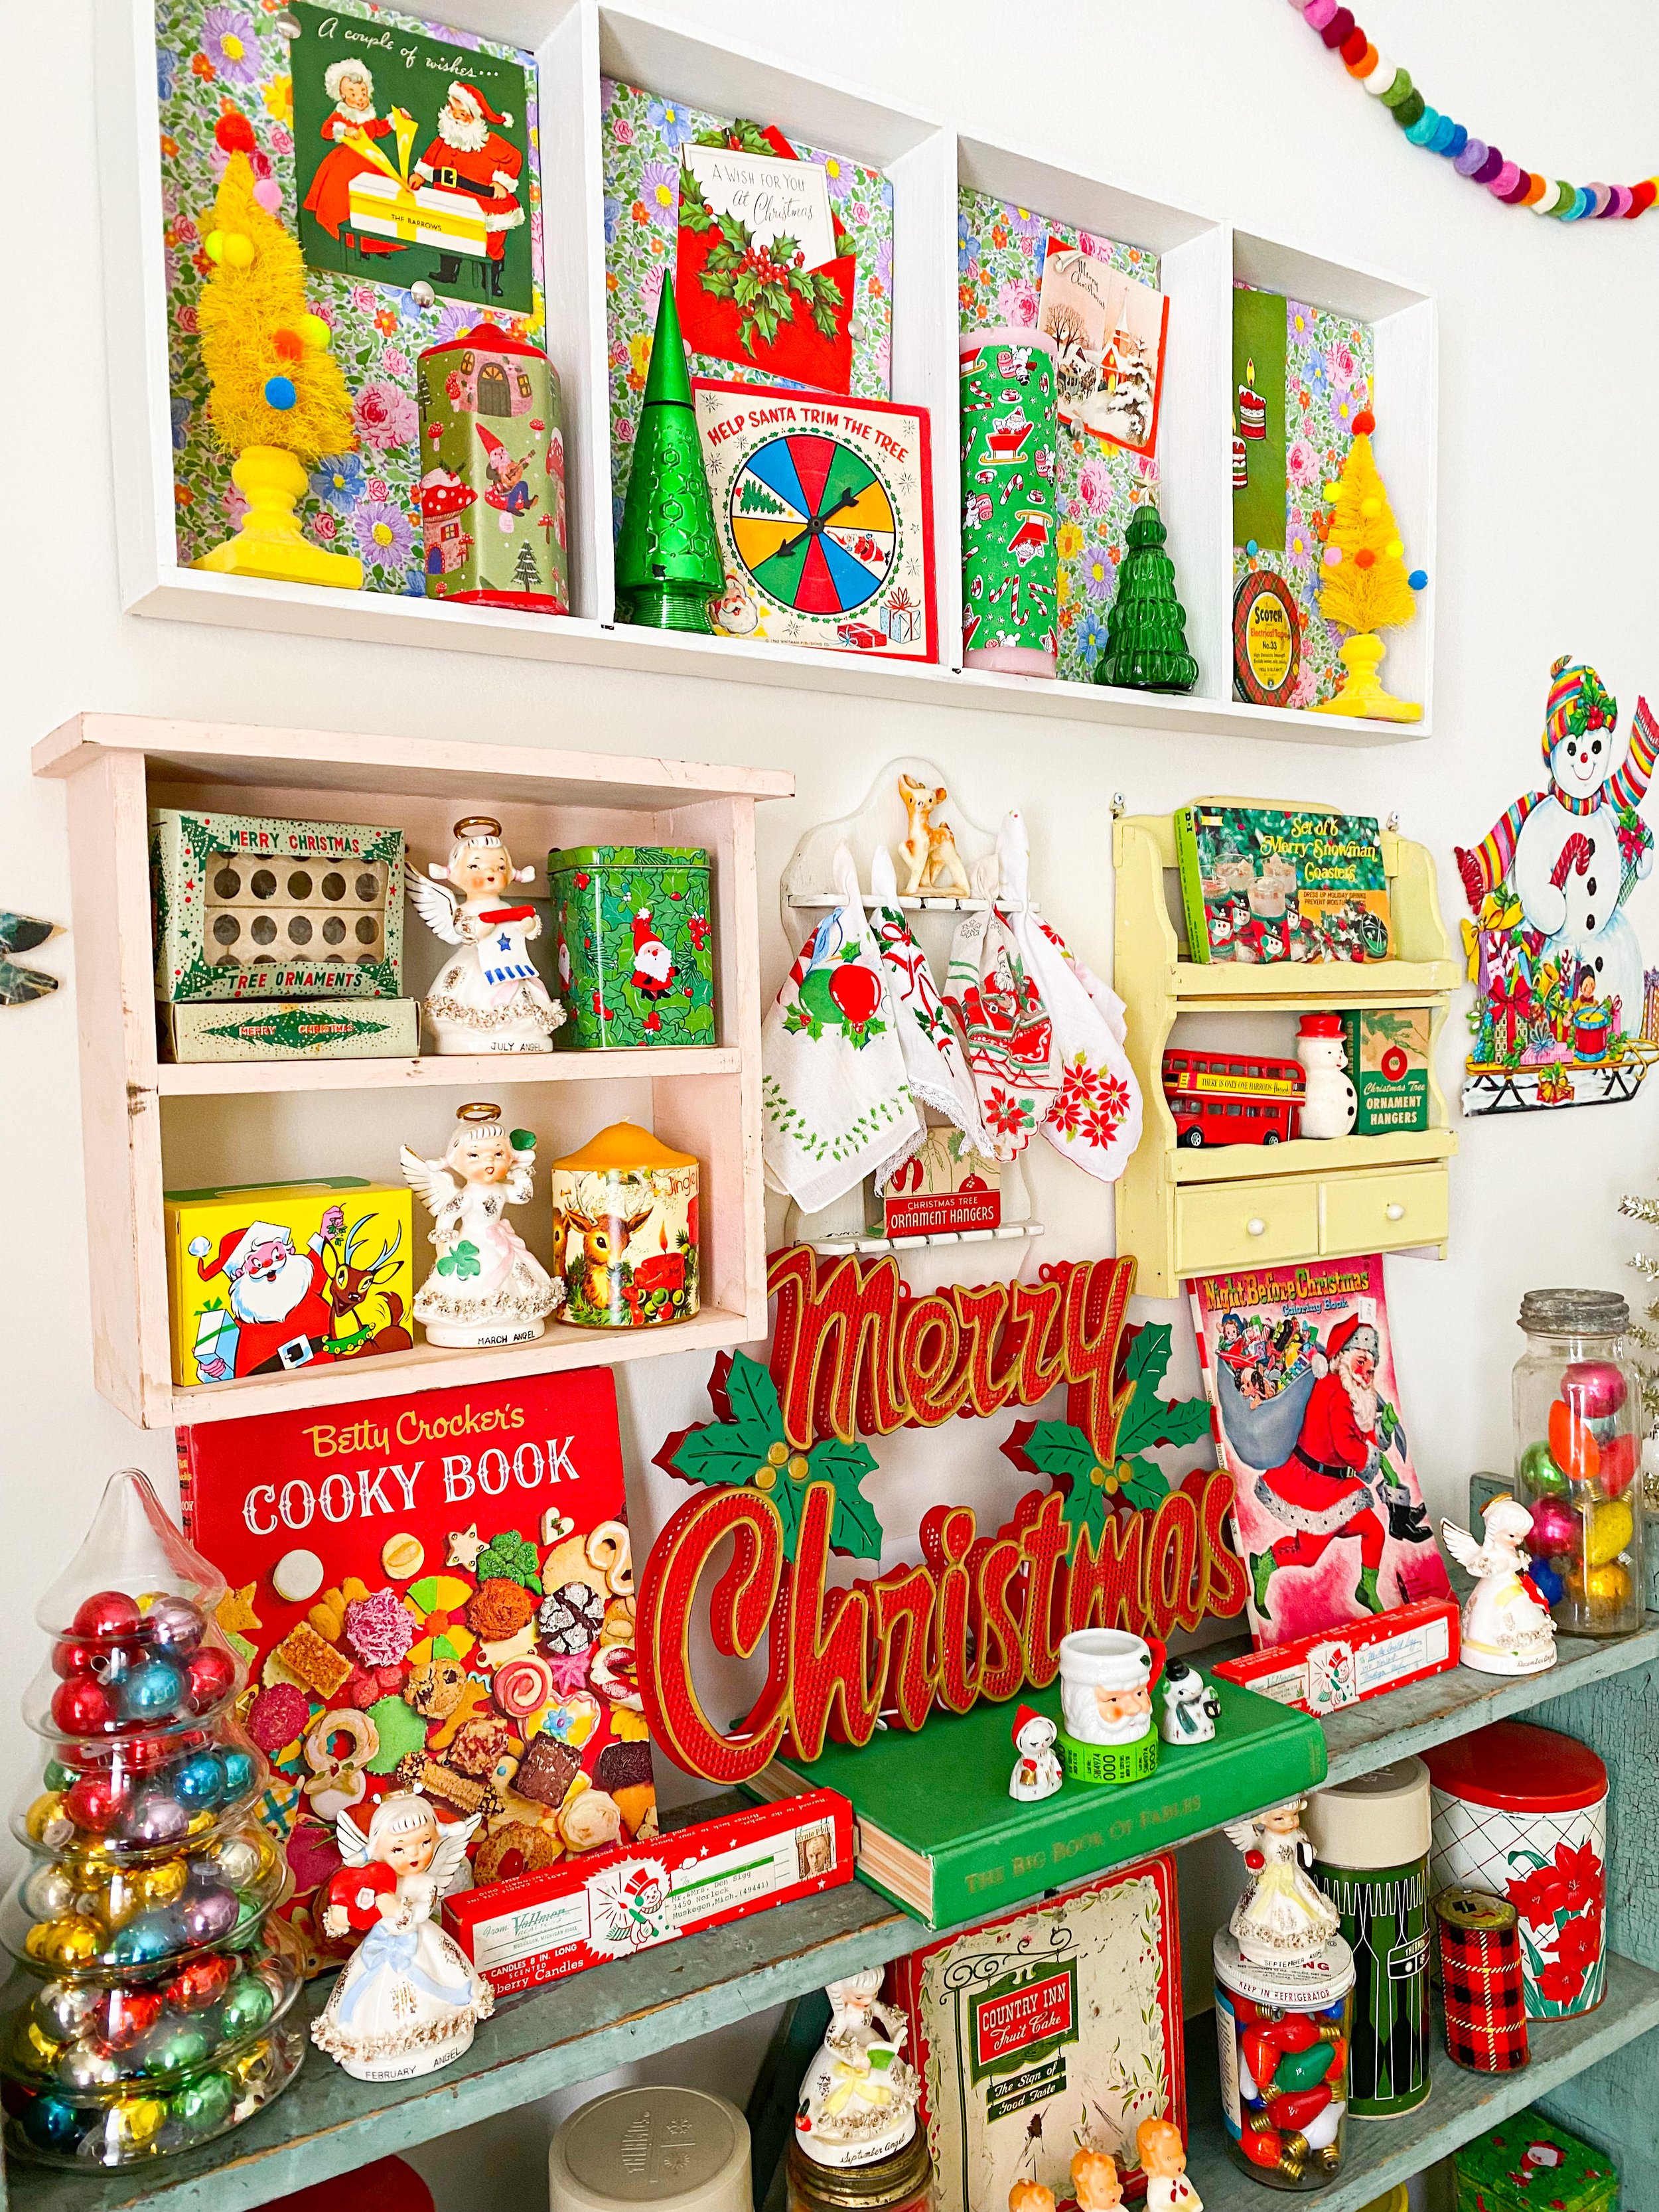 Vintage Christmas collection on display